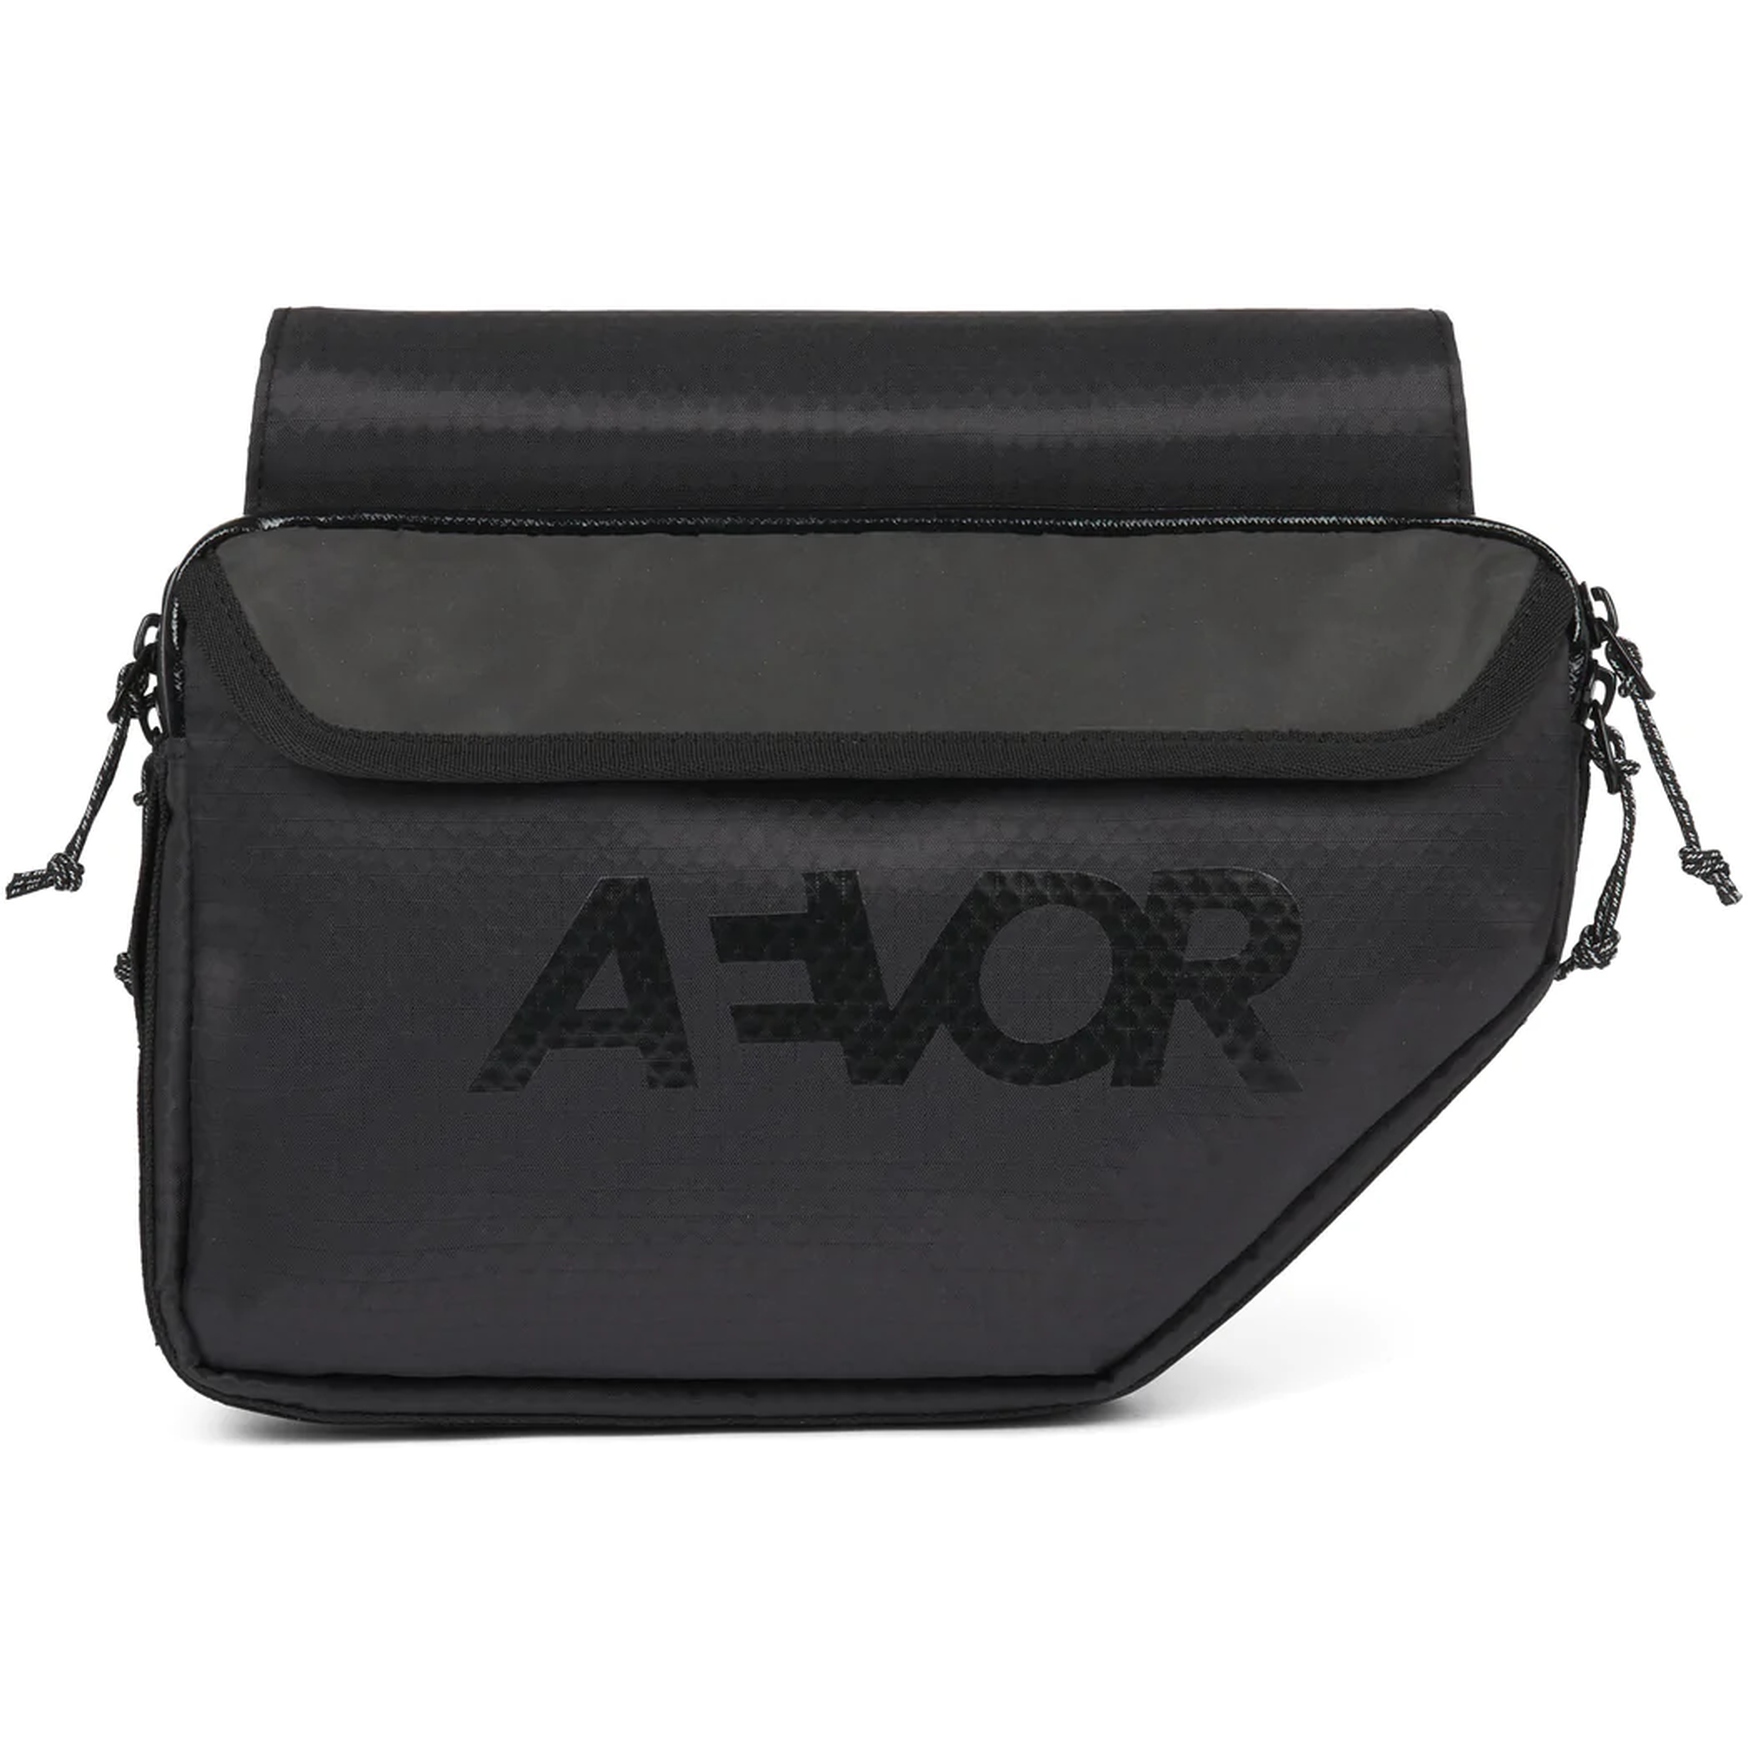 Picture of AEVOR Bike Frame Bag - Proof Black